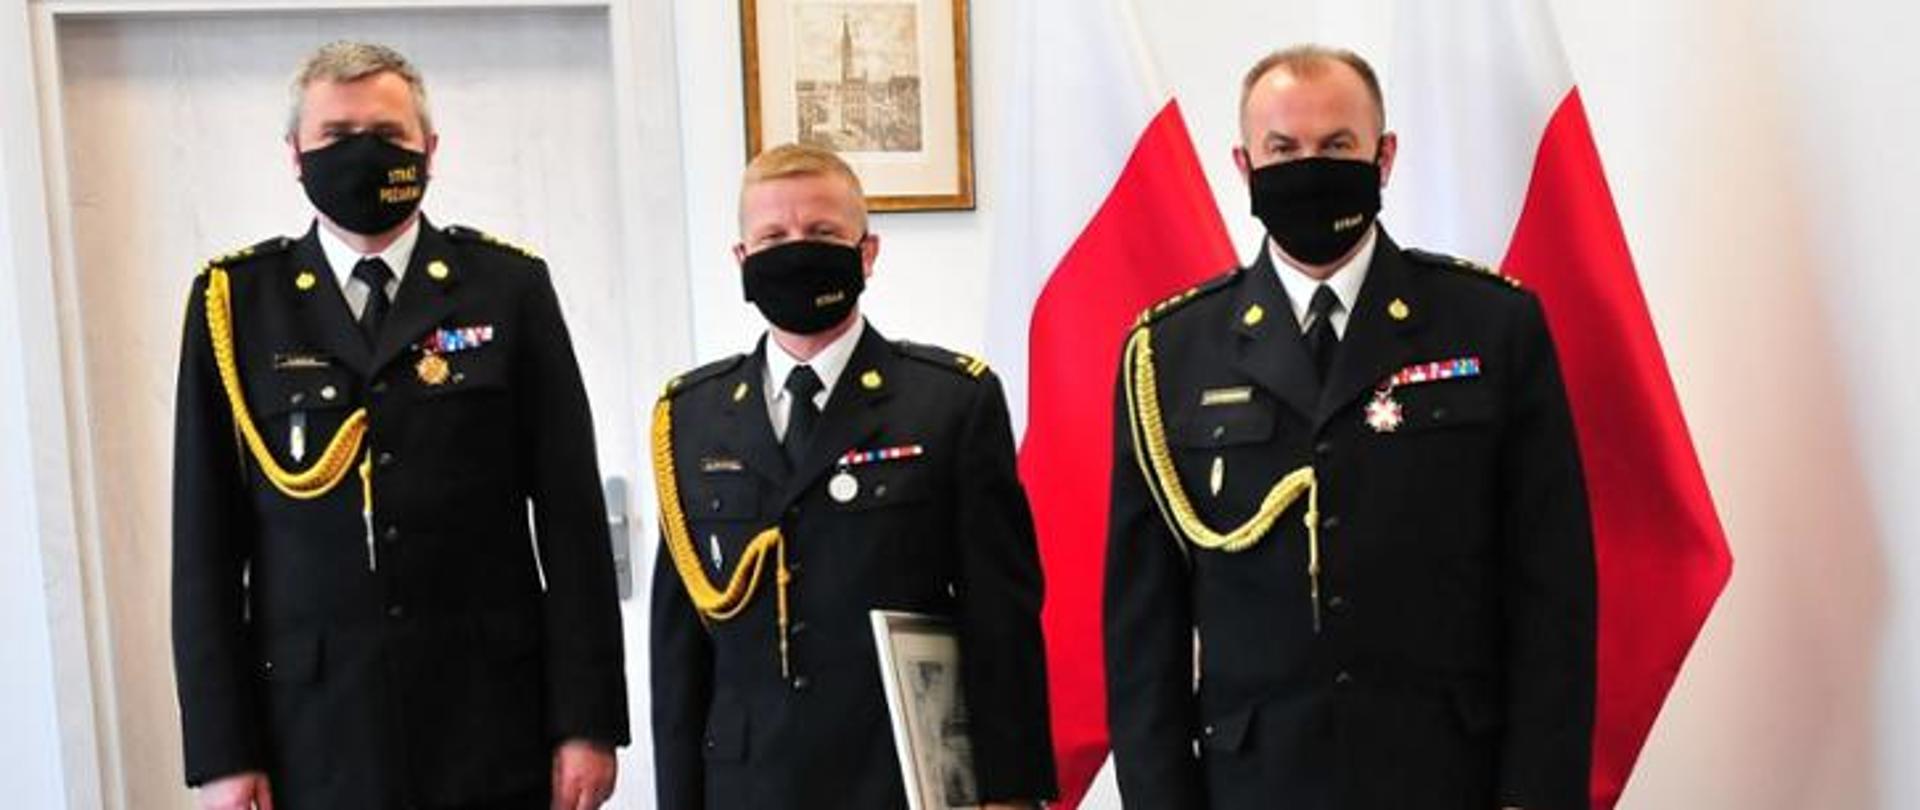 na zdjęciu widoczni są 3 funkcjonariusze PSP w umundurowaniu wyjściowym w tle dwie flagi biało-czerwone i wiszący obrazek na ścianie